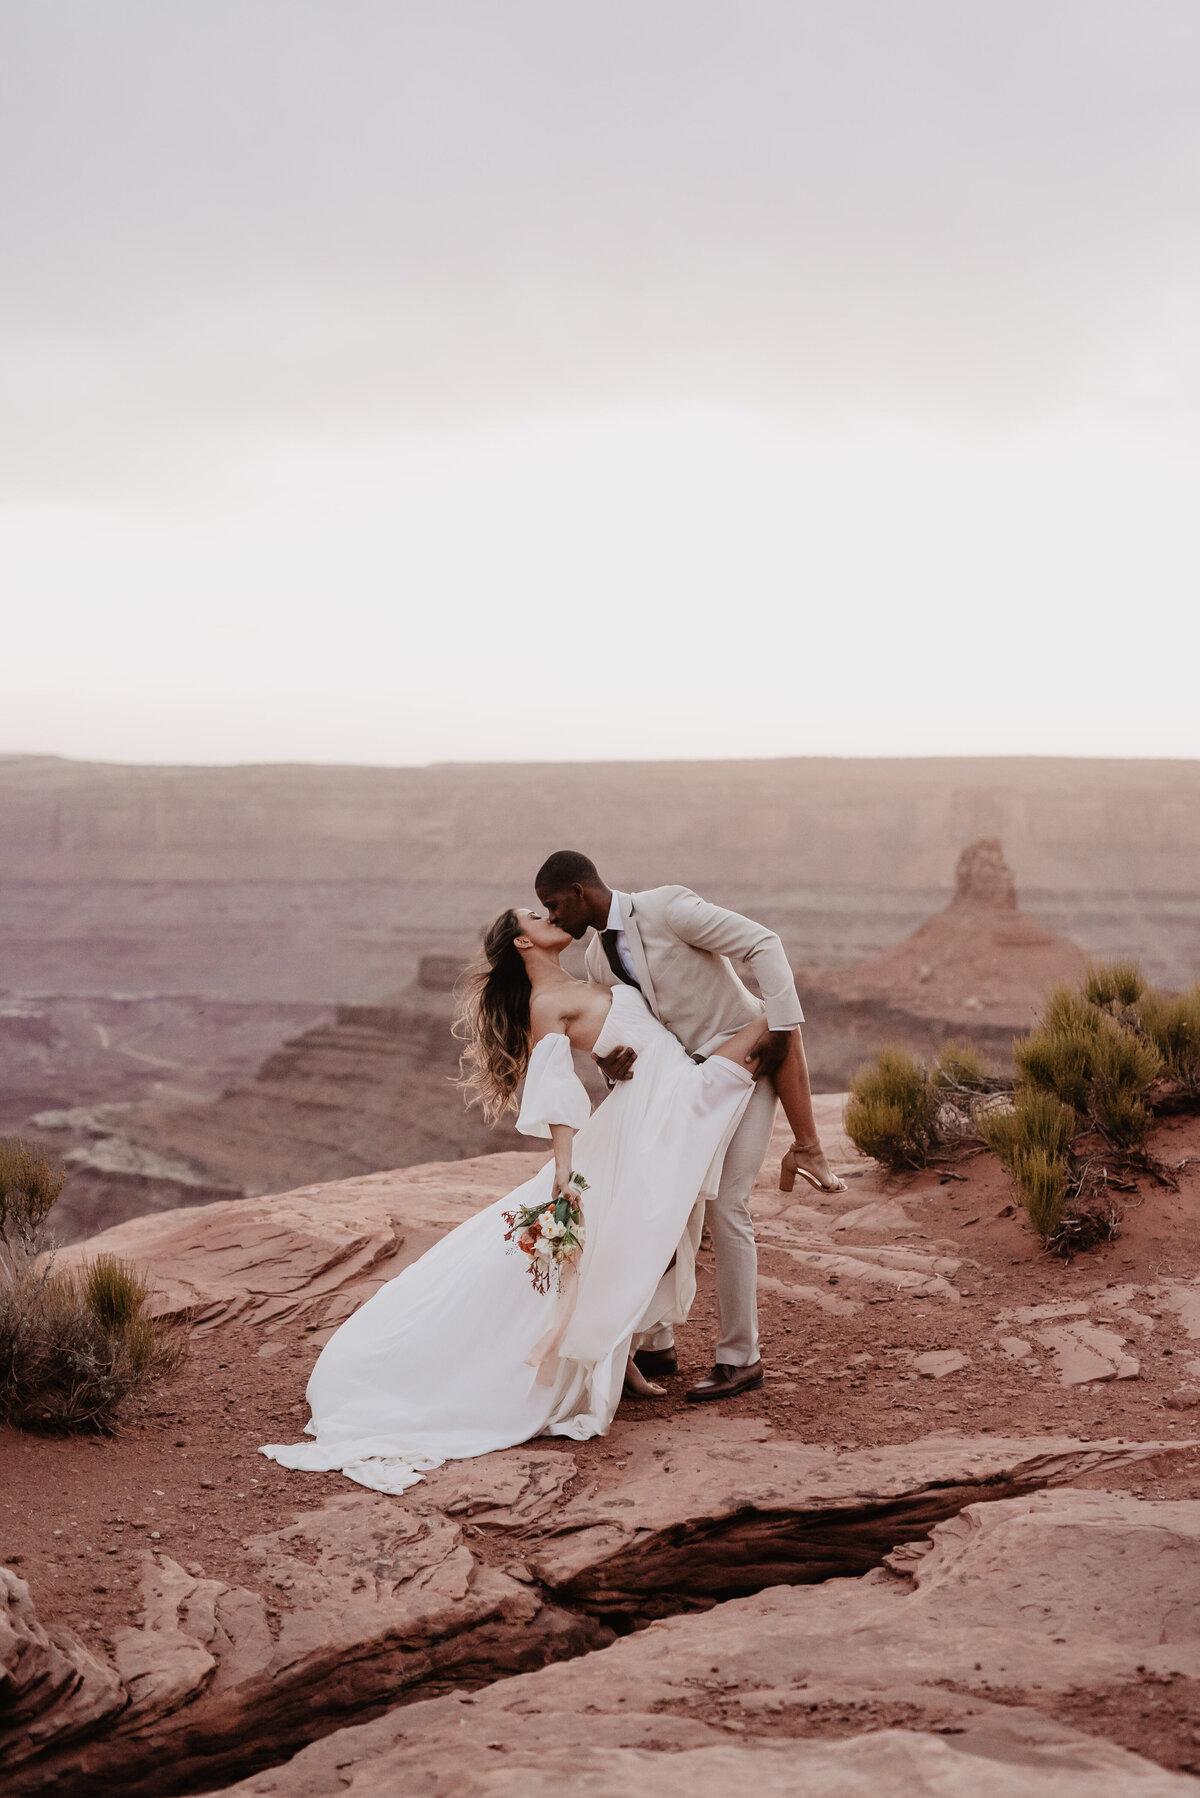 Utah Elopement Photographer captures couple kissing during portraits